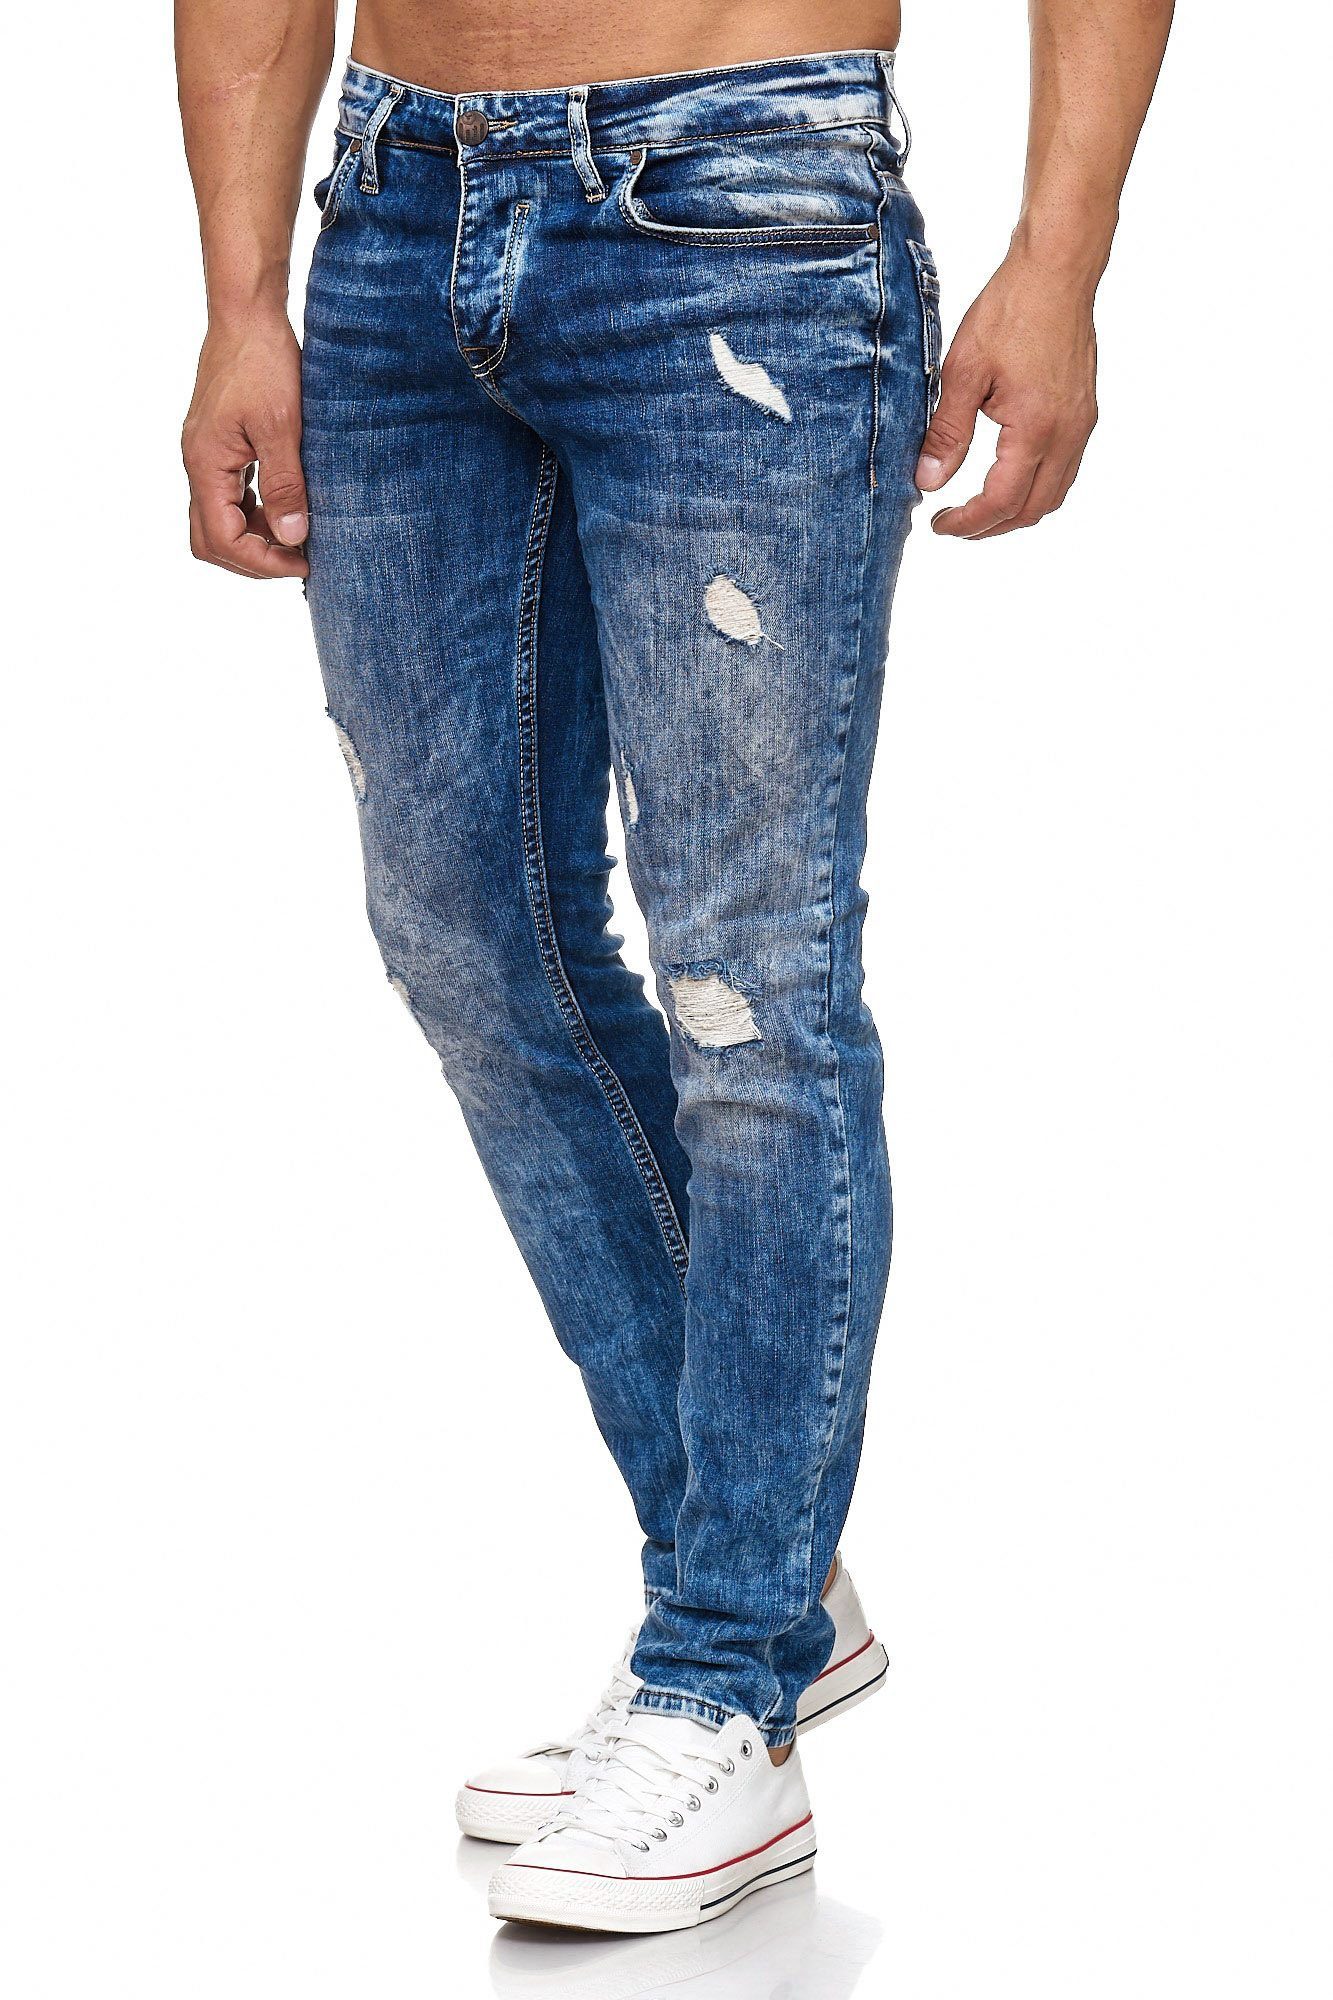 Tazzio Slim-fit-Jeans 17502 im Destroyed-Look blau